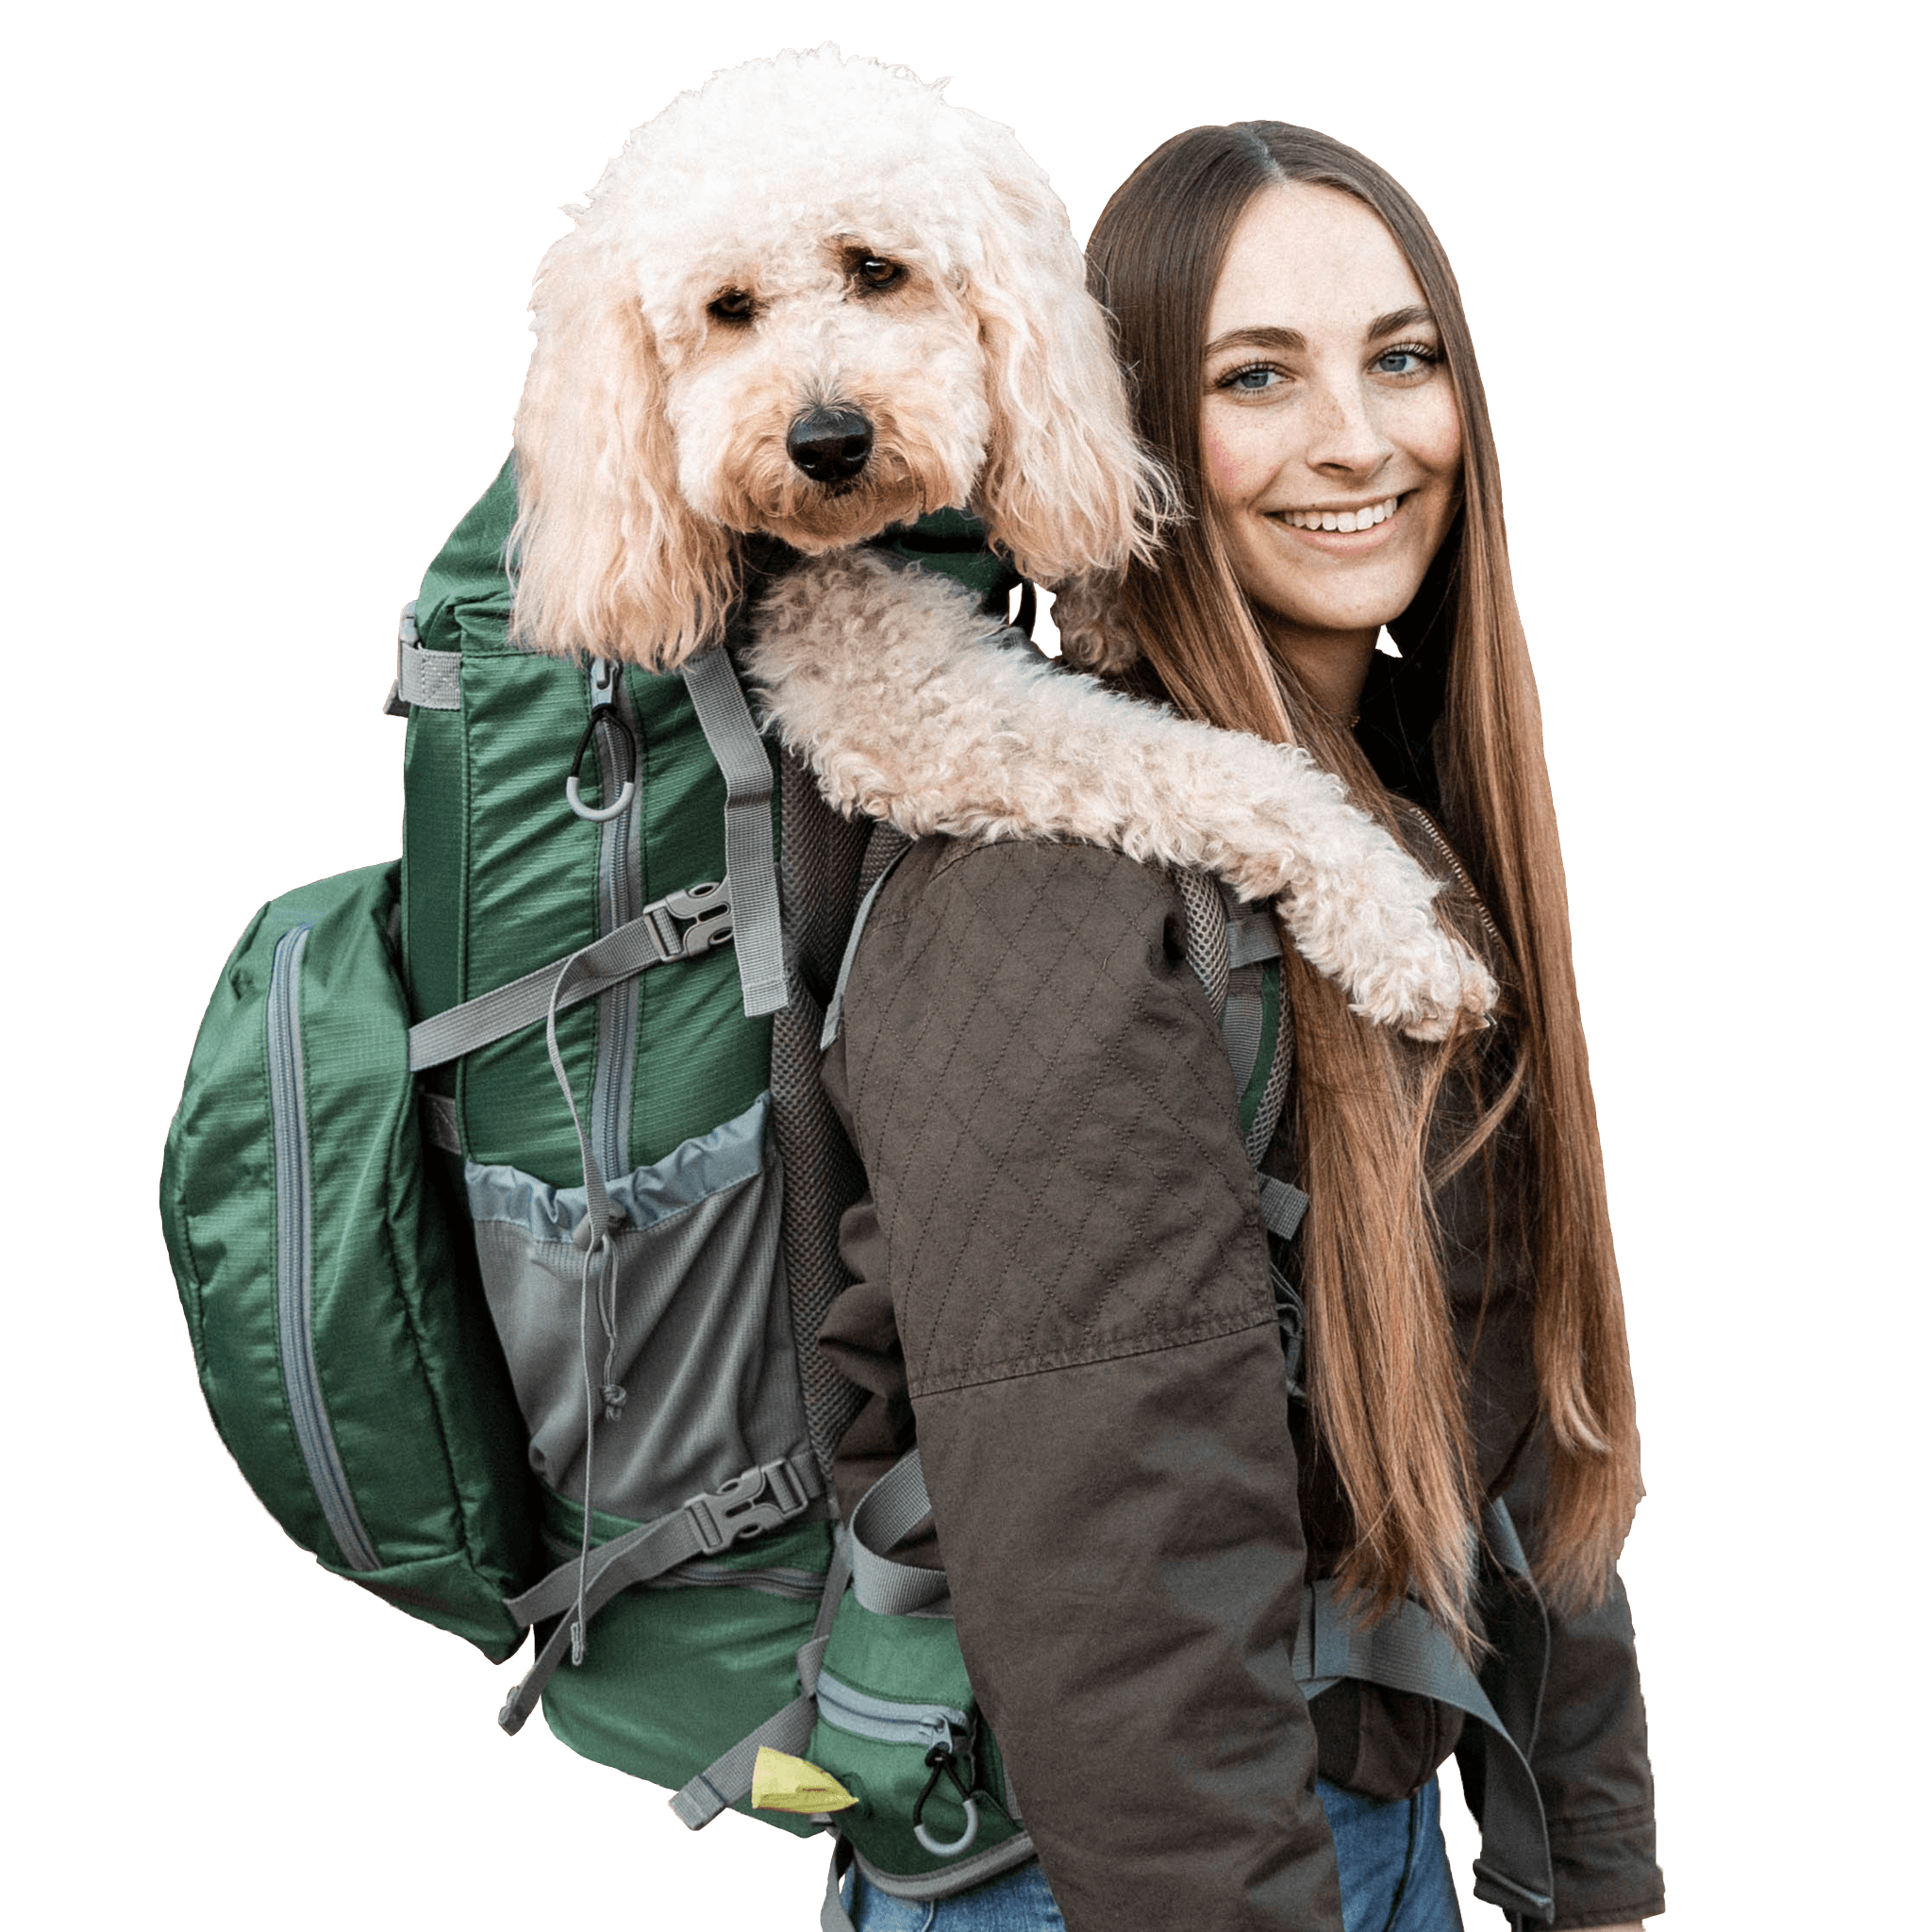 K9 Sport Sack Rover 2 Green Big Dog Carrier & Backpacking Pack, Large